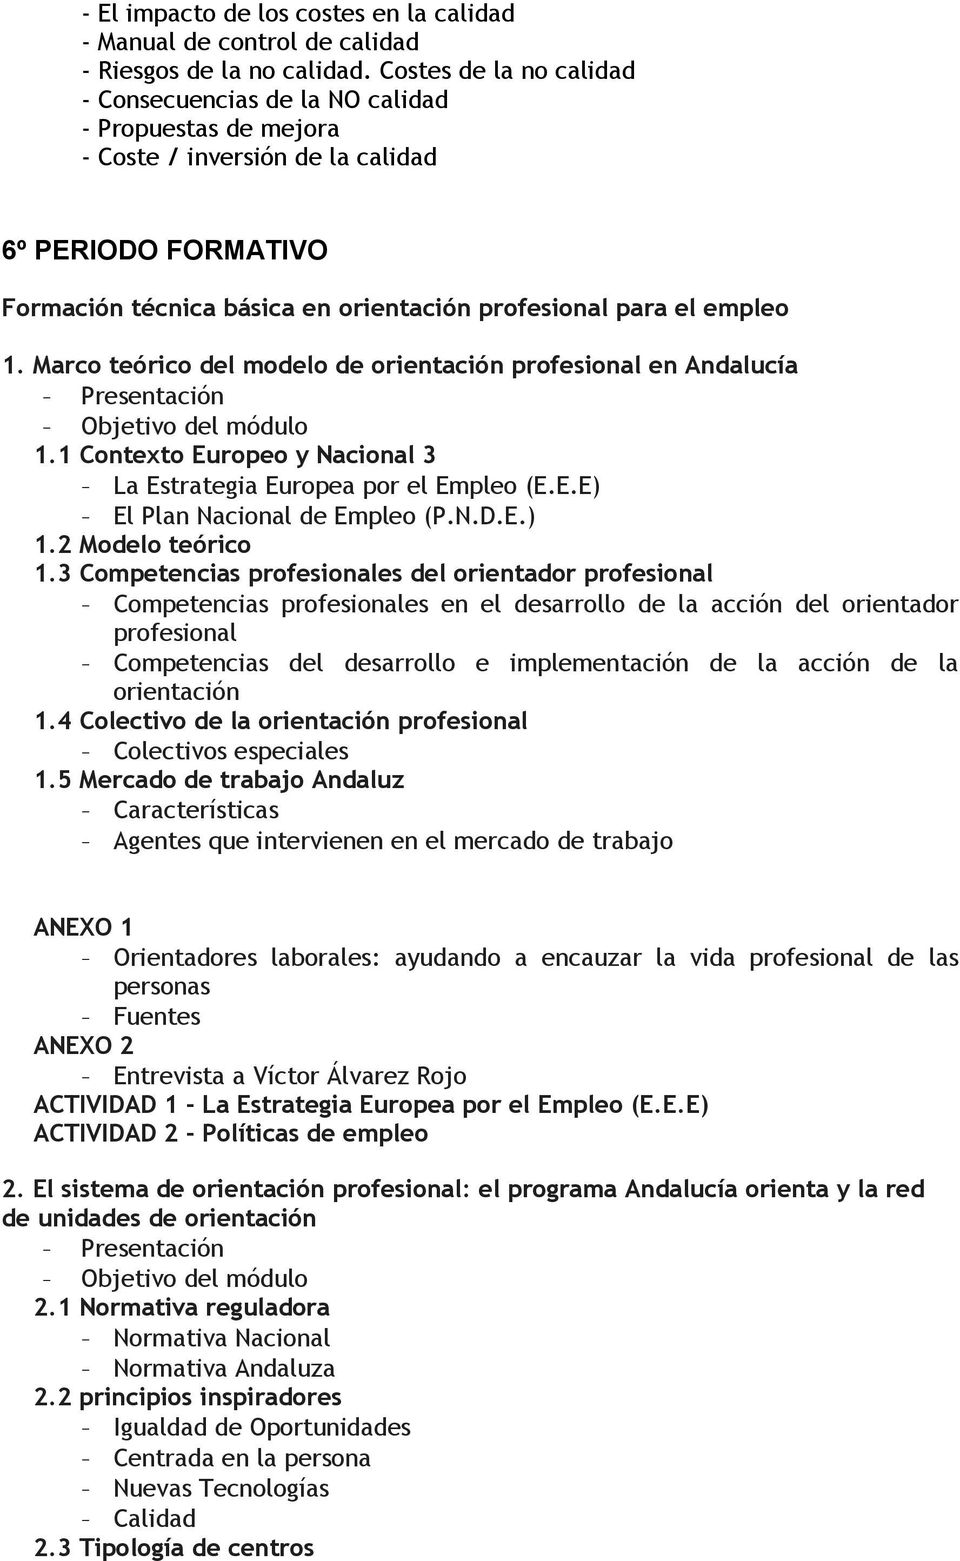 empleo 1. Marco teórico del modelo de orientación profesional en Andalucía - Presentación - Objetivo del módulo 1.1 Contexto Europeo y Nacional 3 - La Estrategia Europea por el Empleo (E.E.E) - El Plan Nacional de Empleo (P.